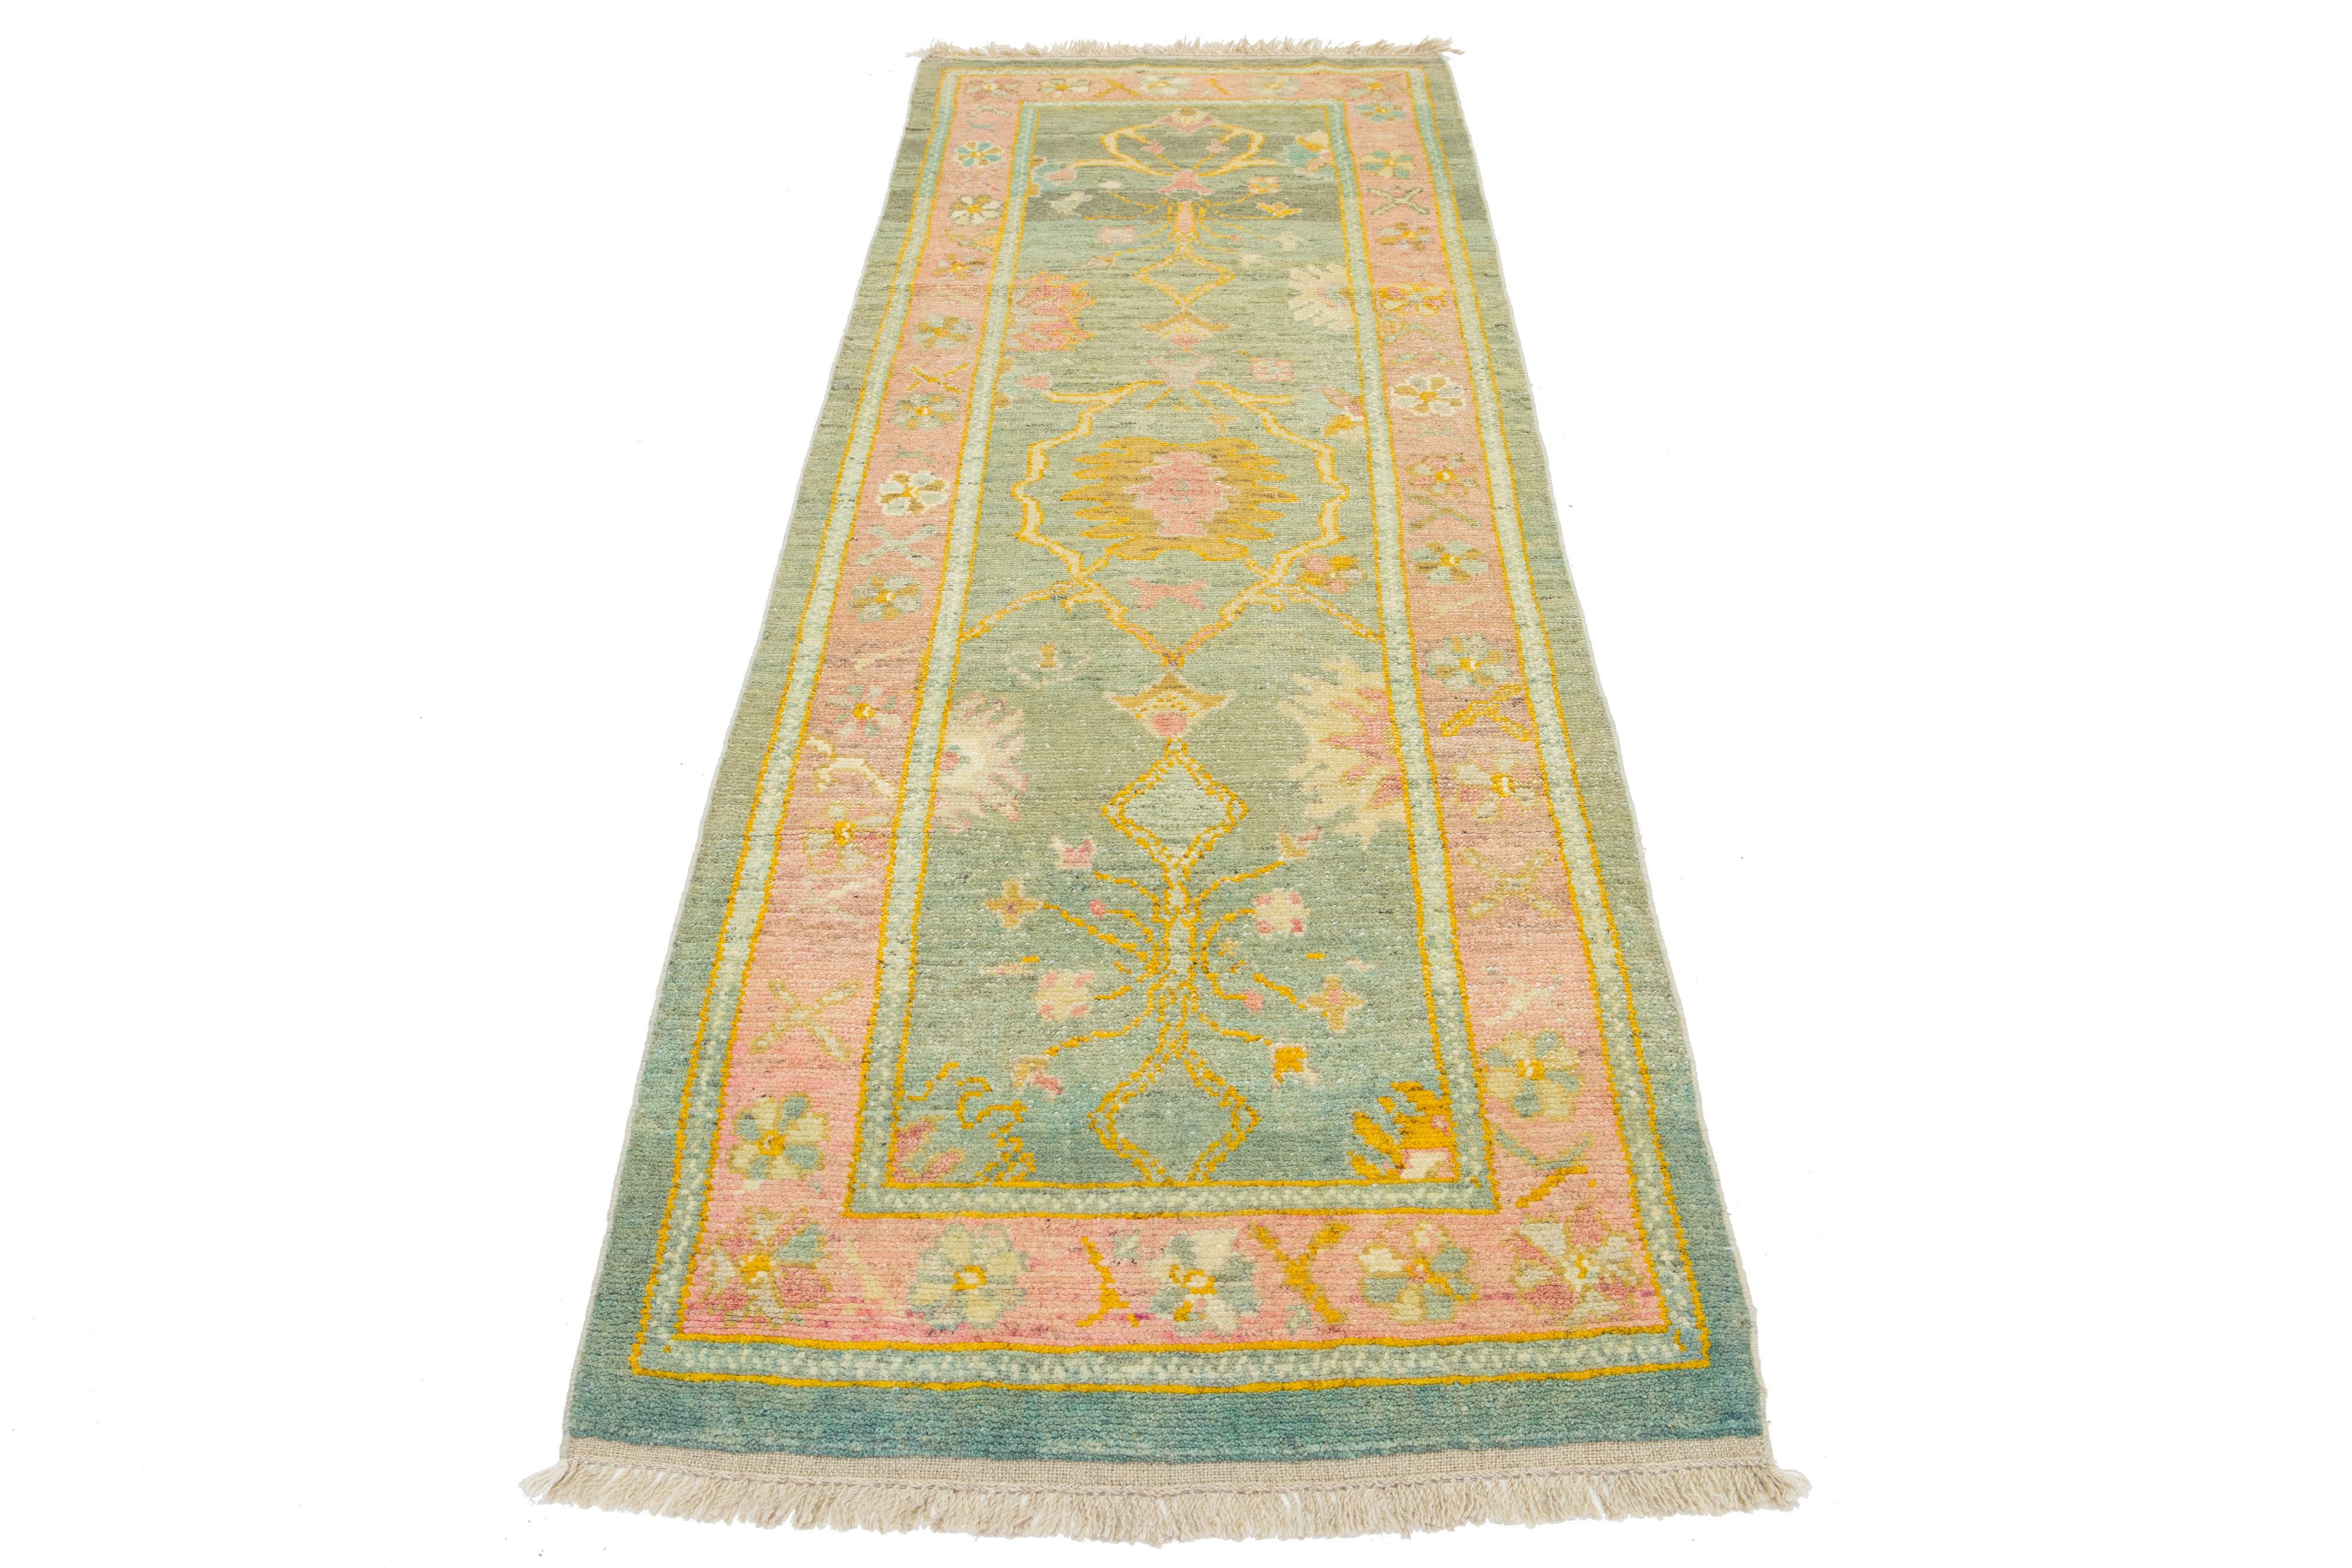 Magnifique tapis moderne en laine Oushak nouée à la main avec un champ de couleur verte. Cette pièce turque présente un cadre rose avec des accents jaunes, orange, roses et verts dans un magnifique motif floral.

Ce tapis mesure 3'1